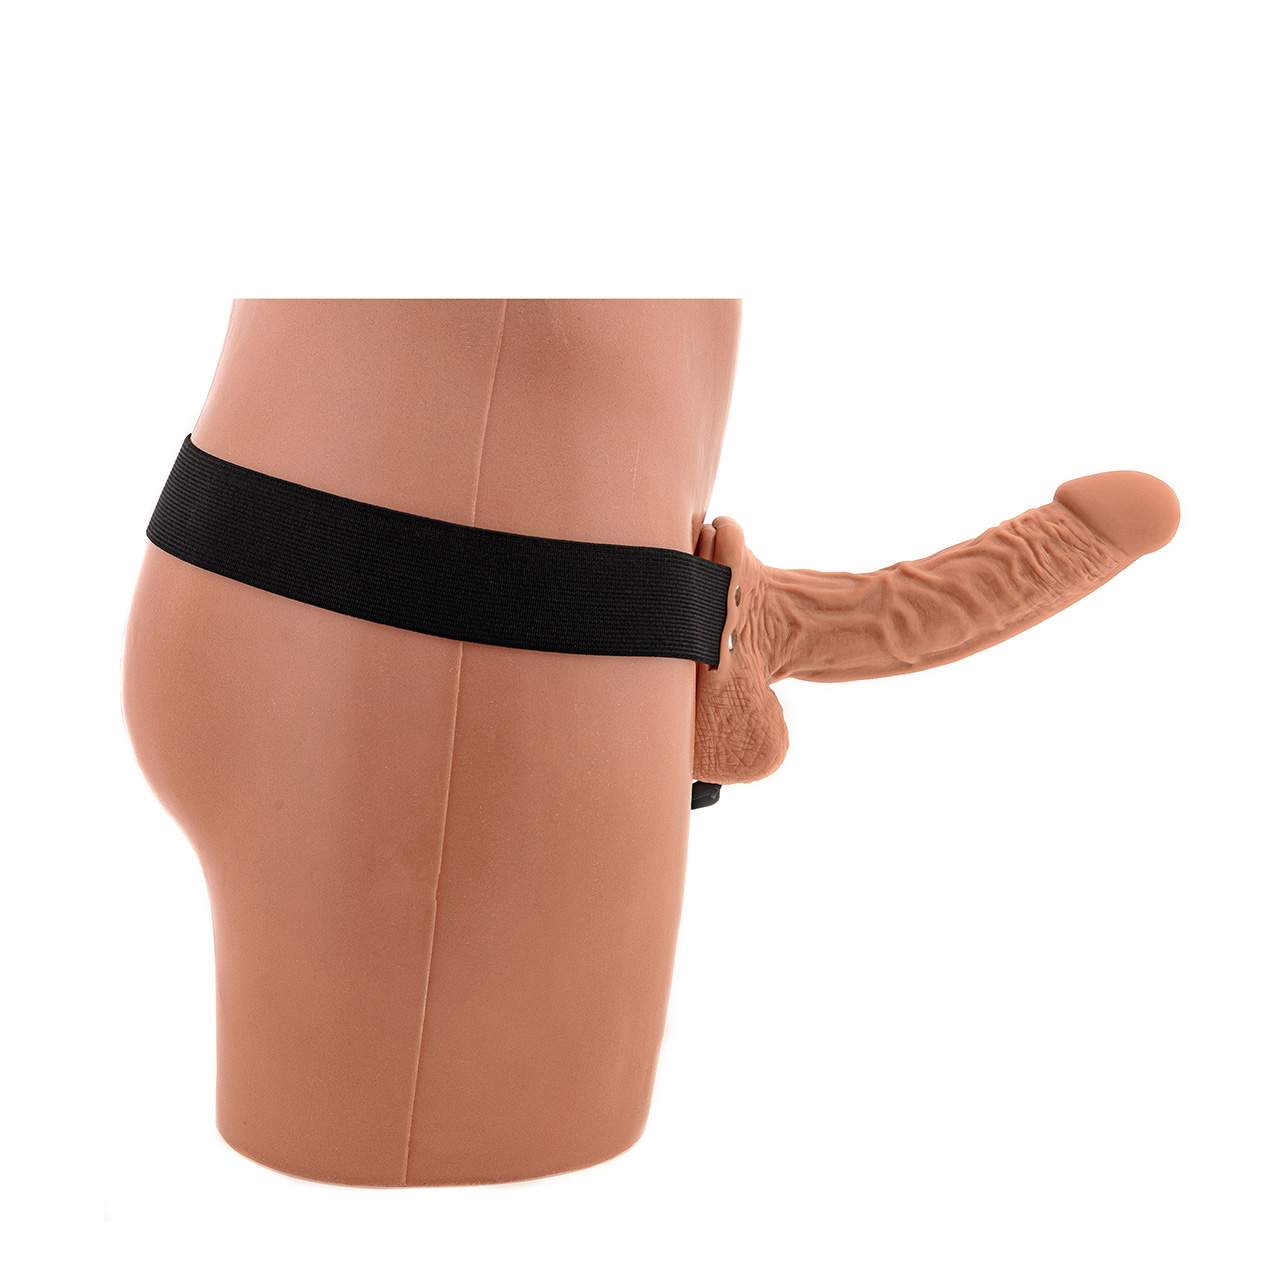 Cielista realistyczna proteza penisa z jądrami – 19 cm